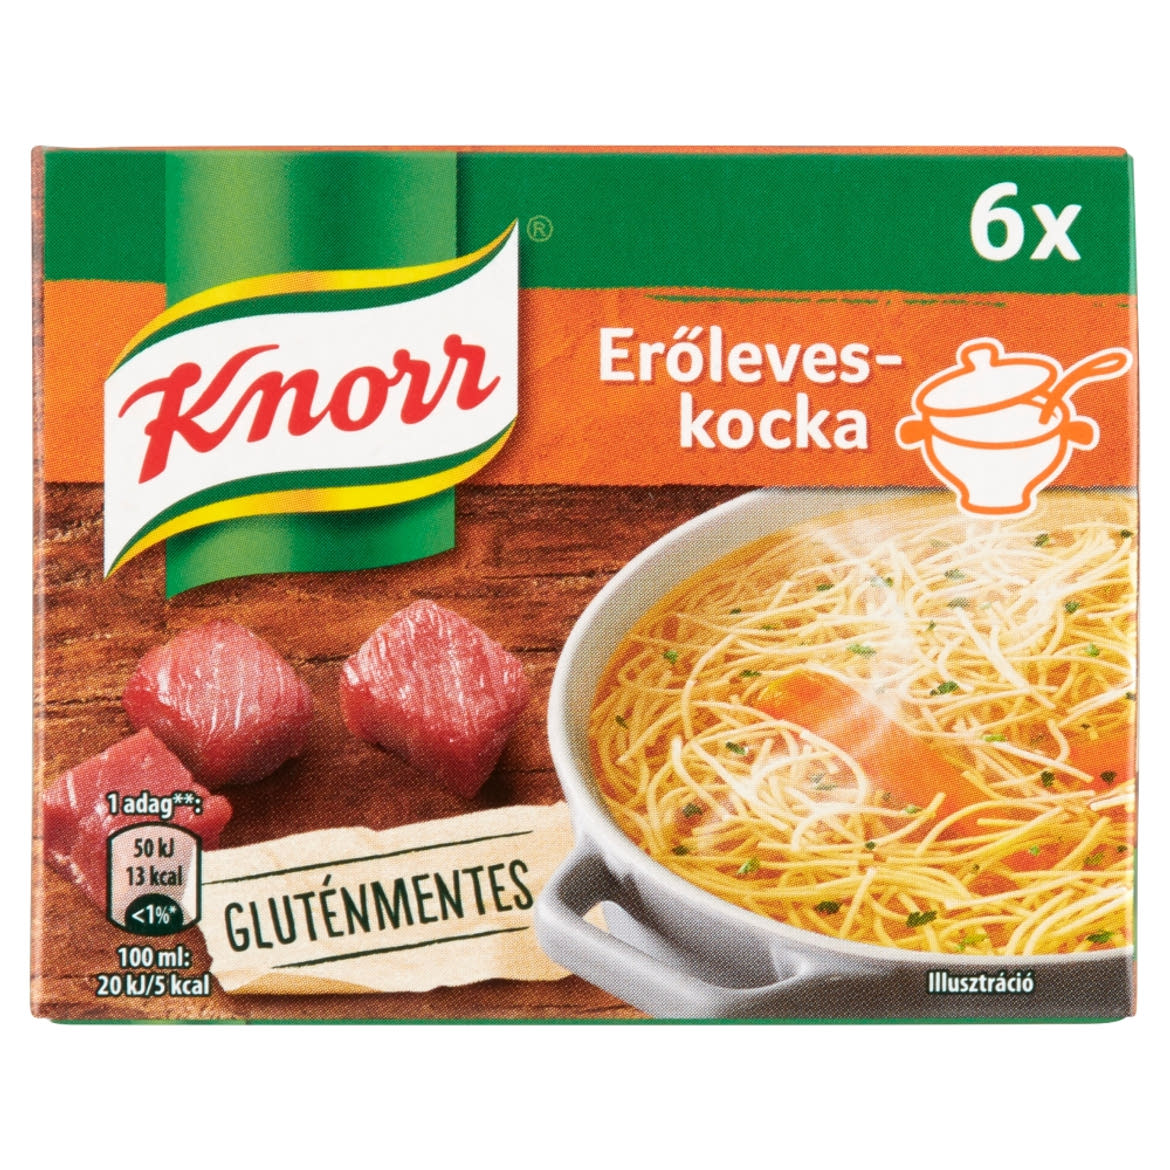 Knorr erőleveskocka 6 x